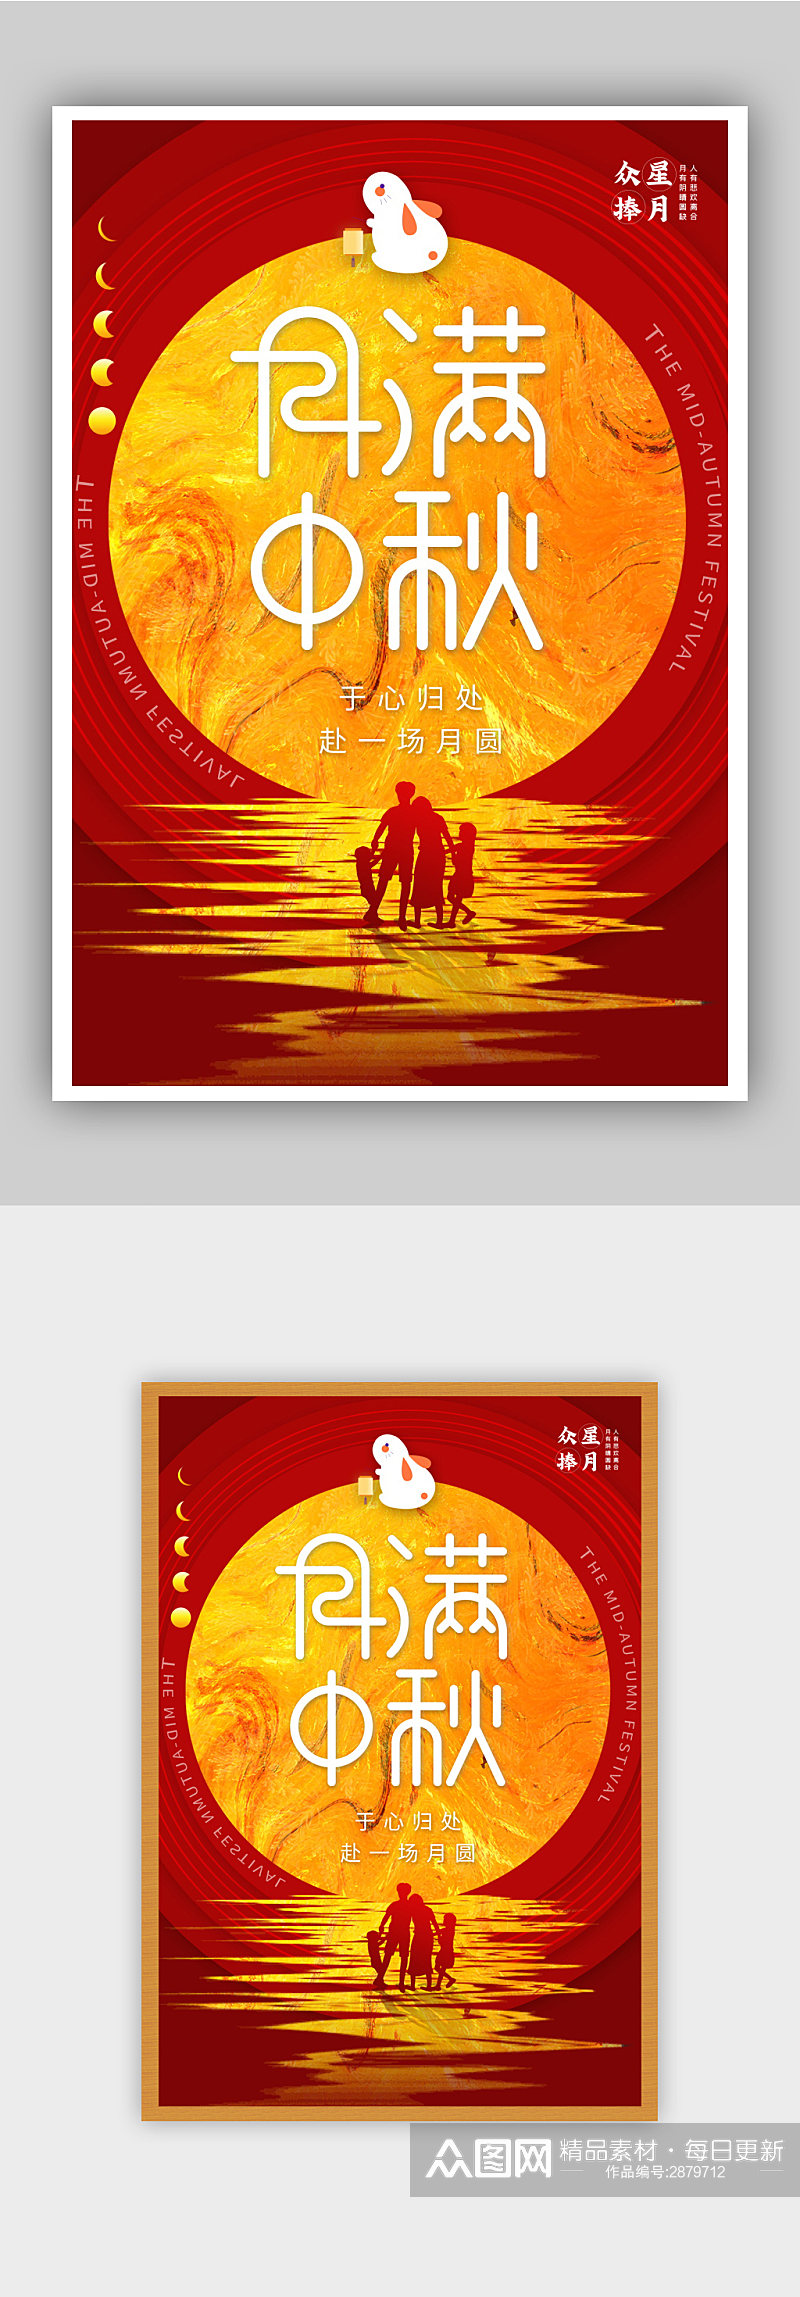 红色大气中秋节节日快乐海报素材